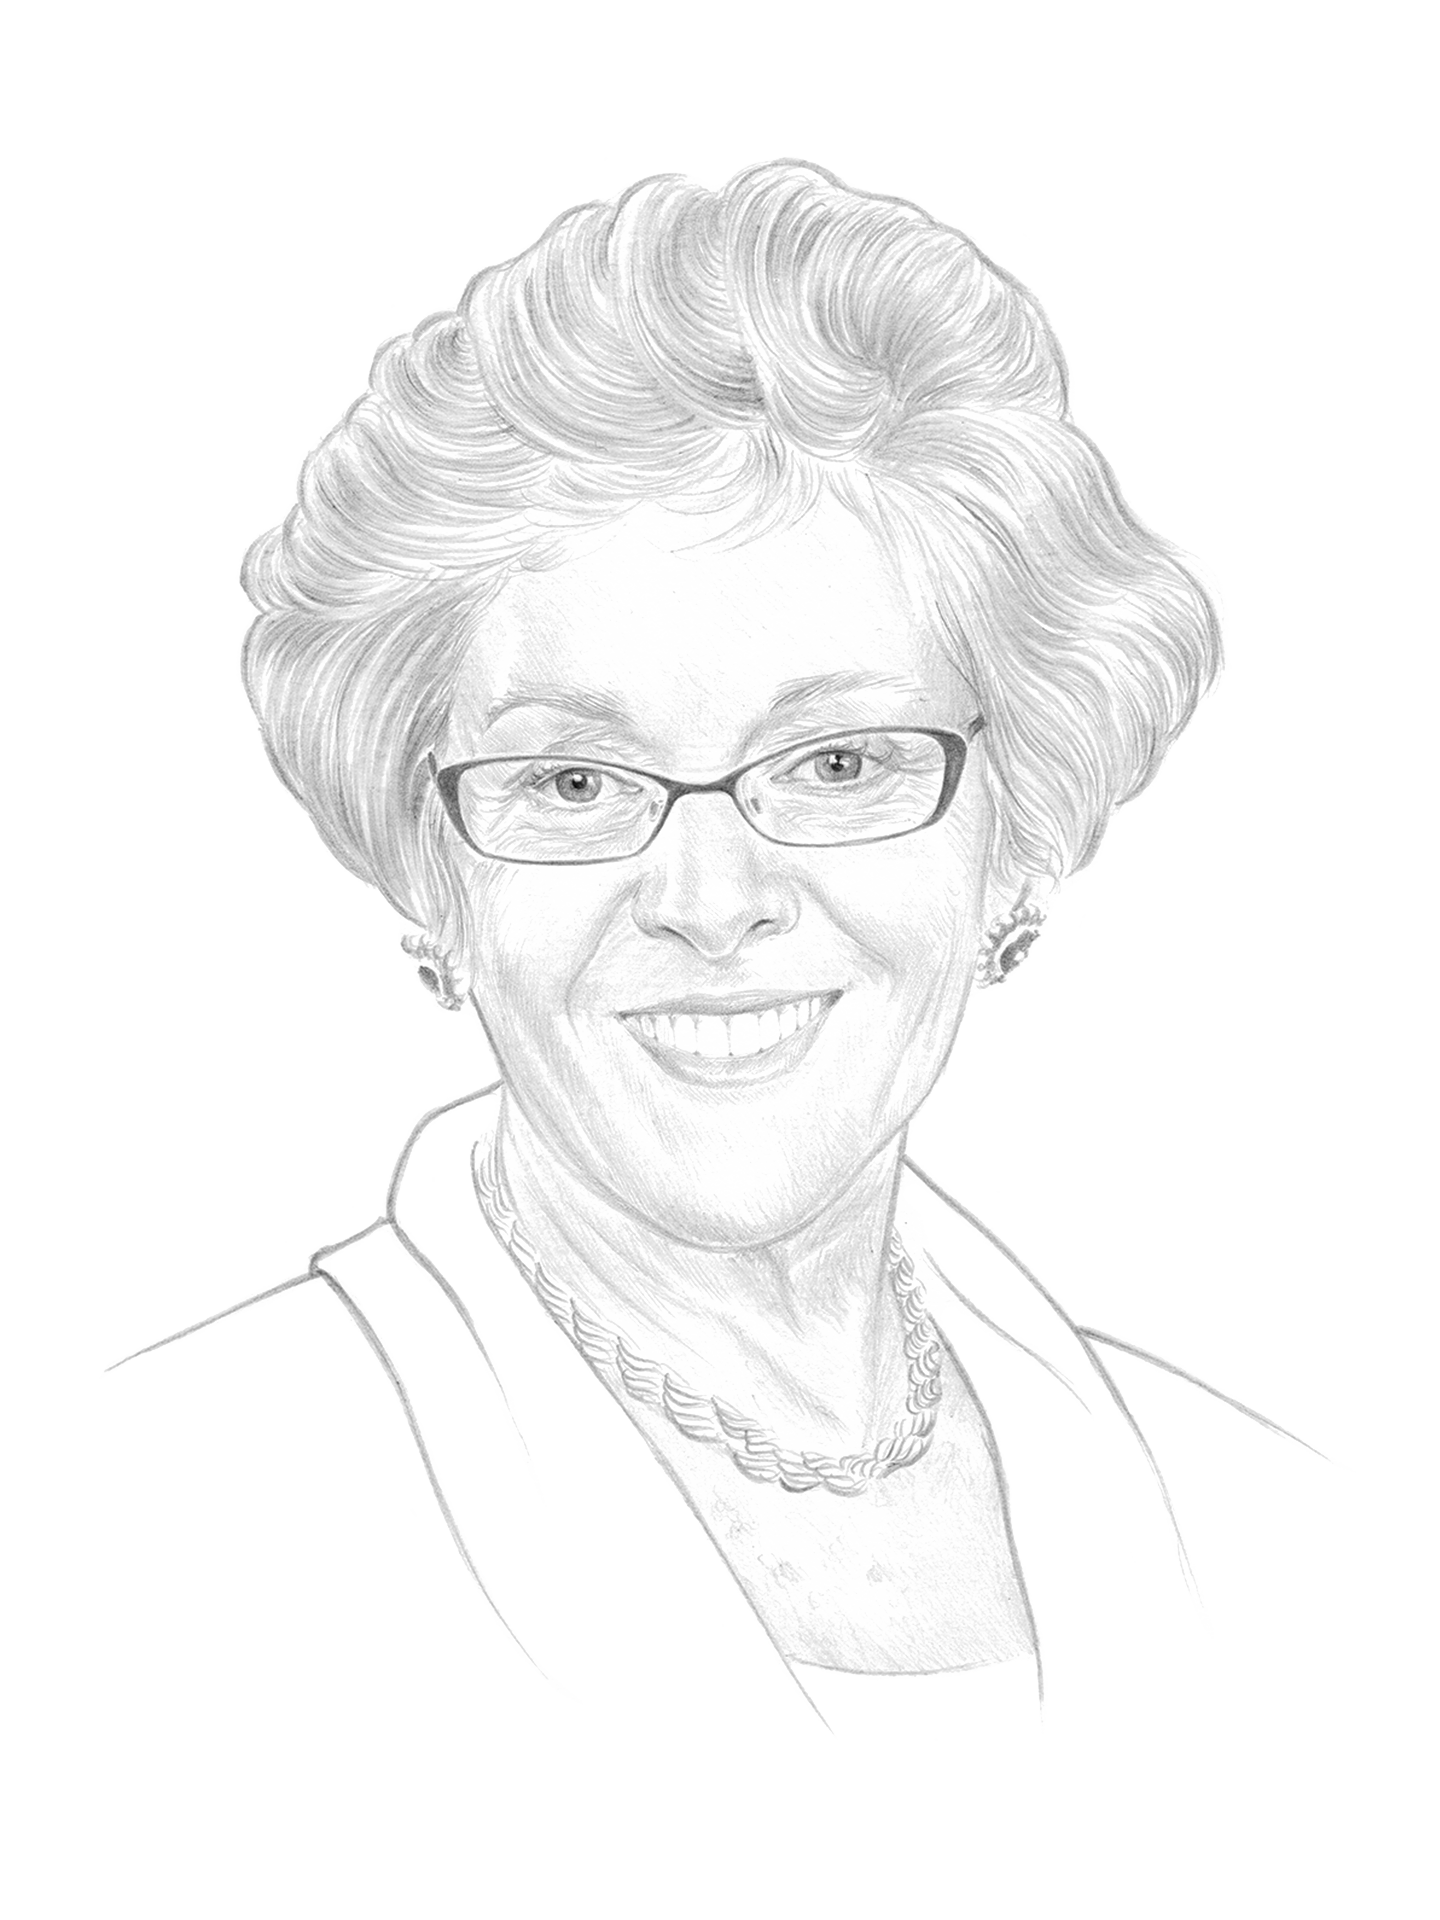 Elizabeth B. Walton, CFA